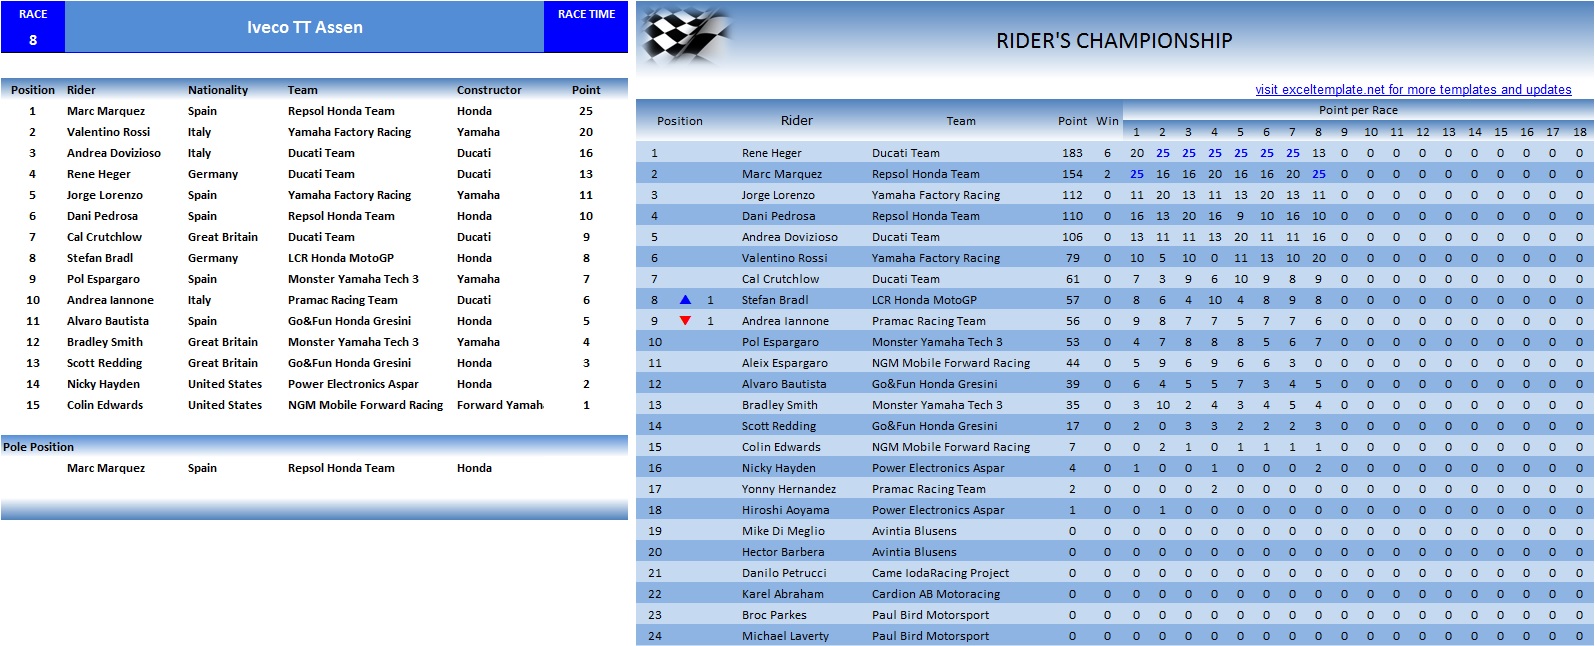 Assen Results - Ducati.jpg